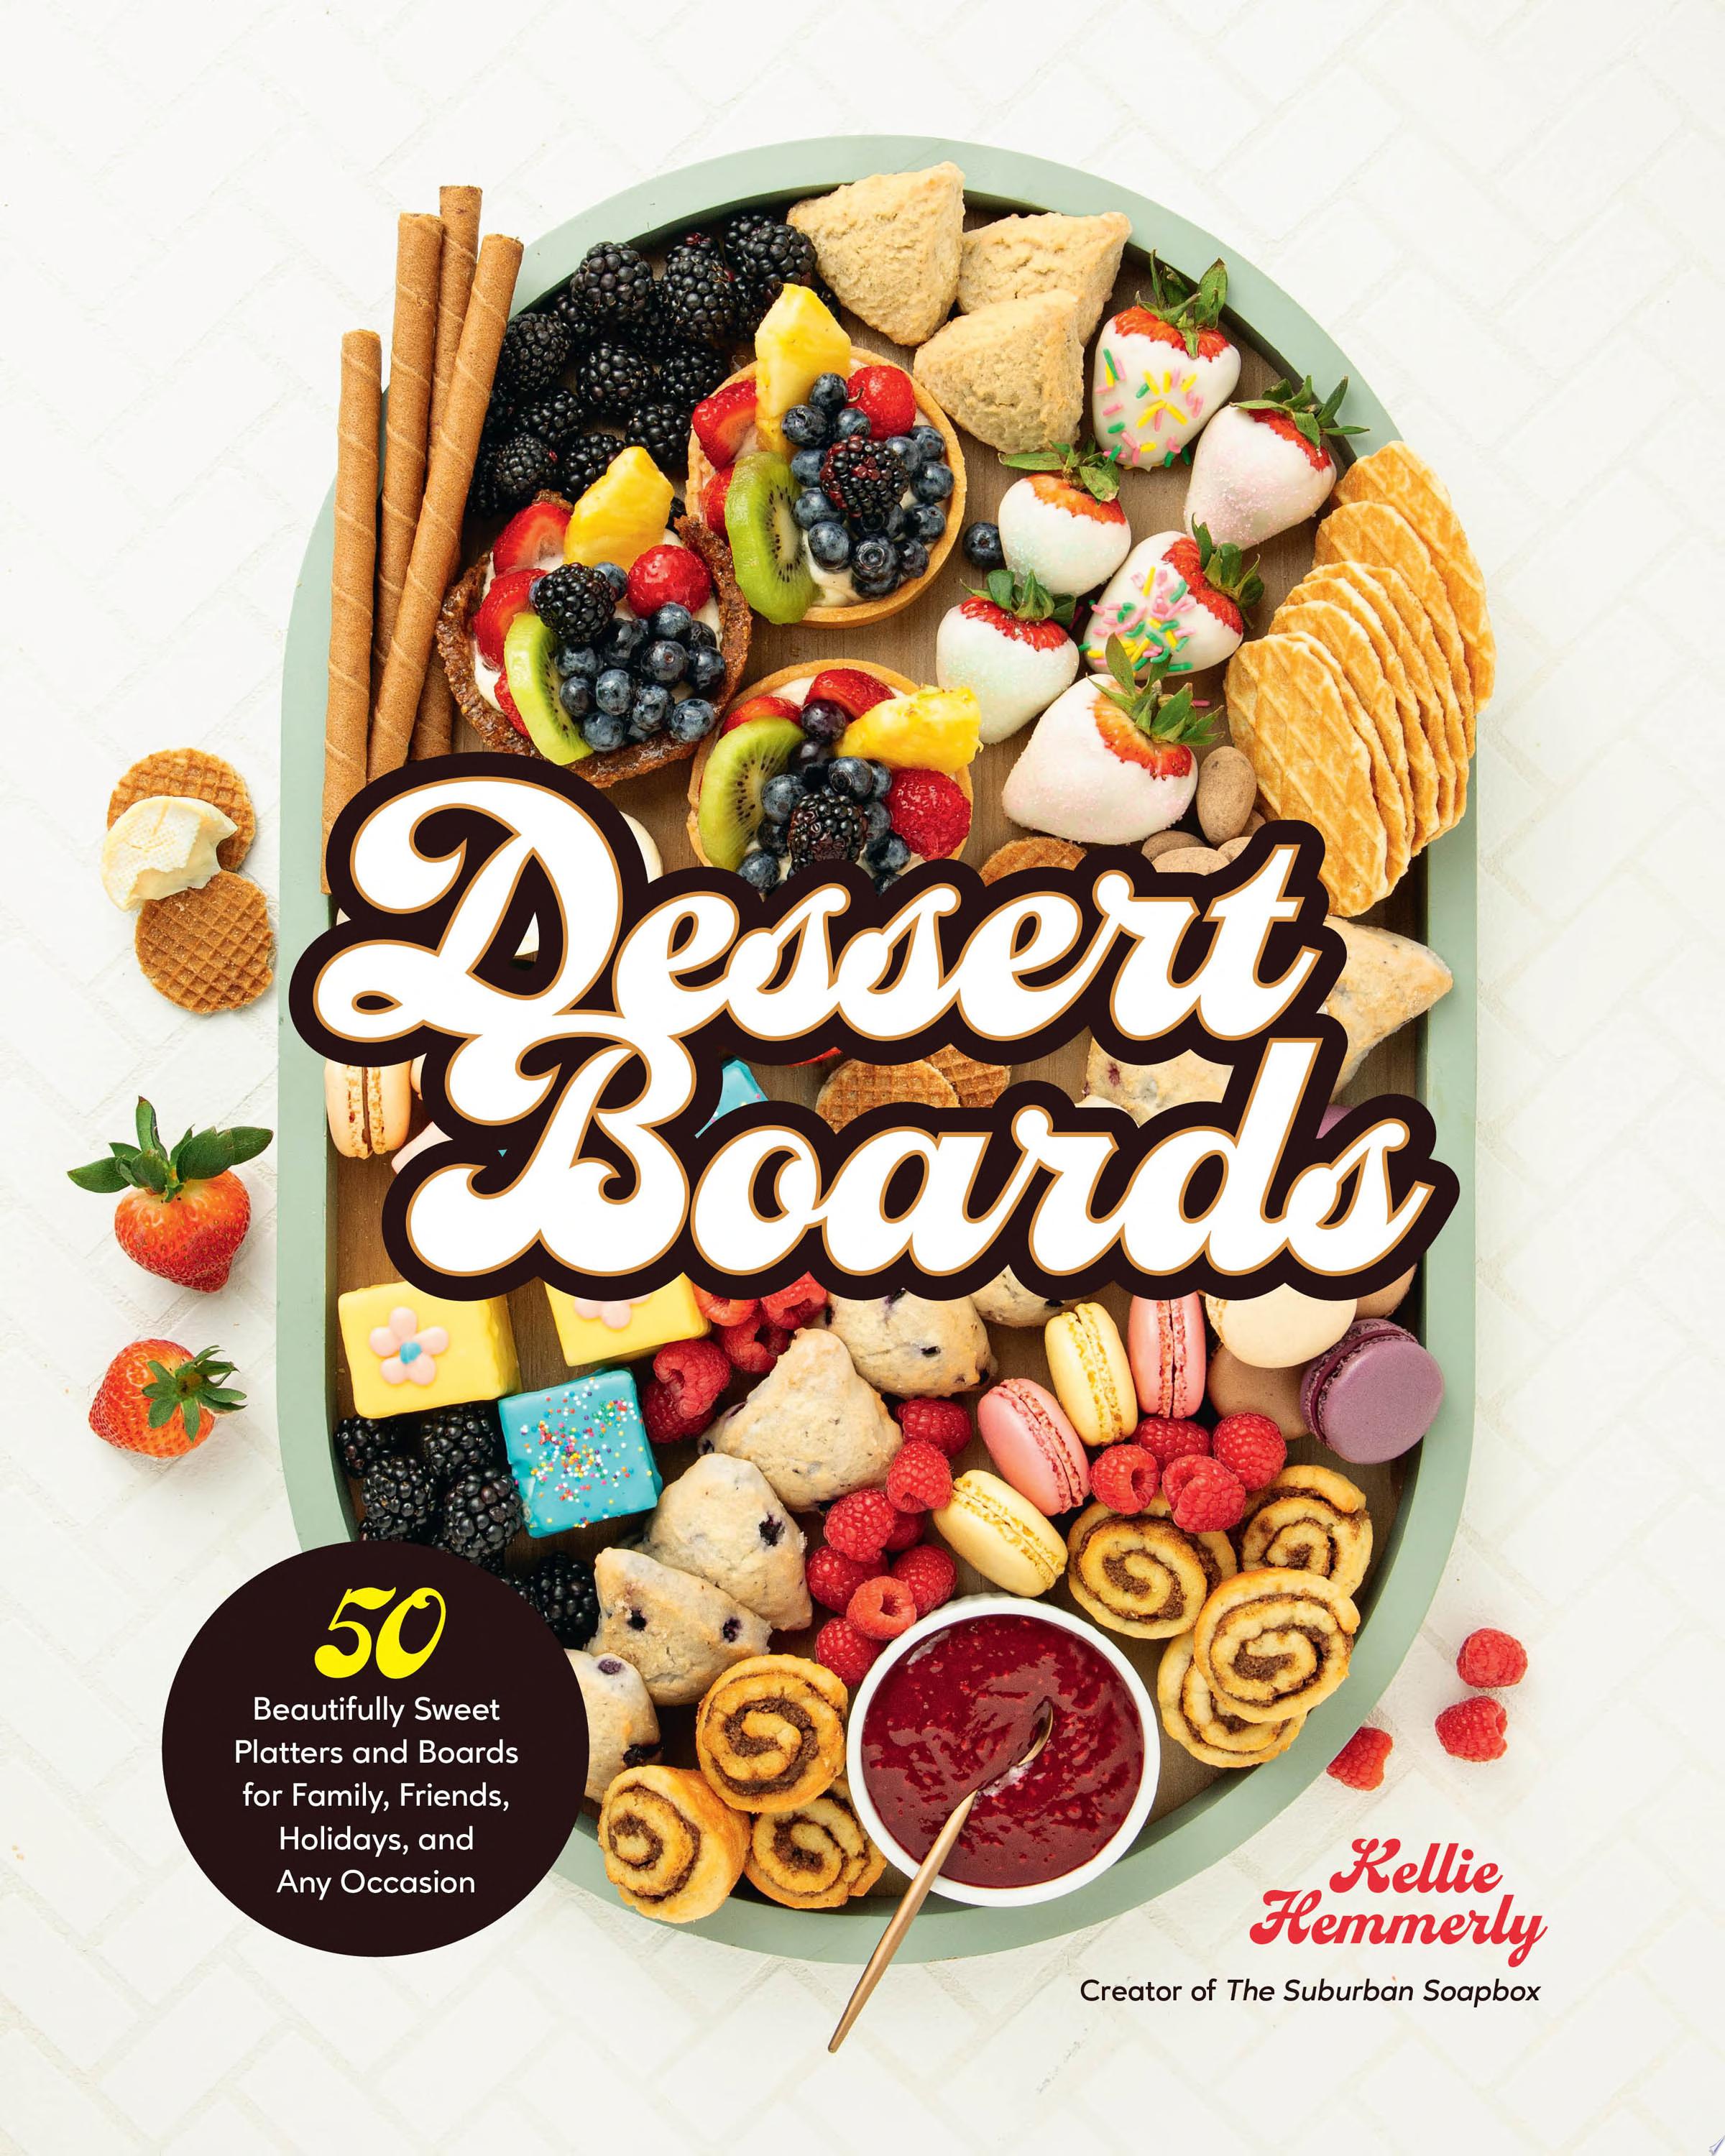 Image for "Dessert Boards"